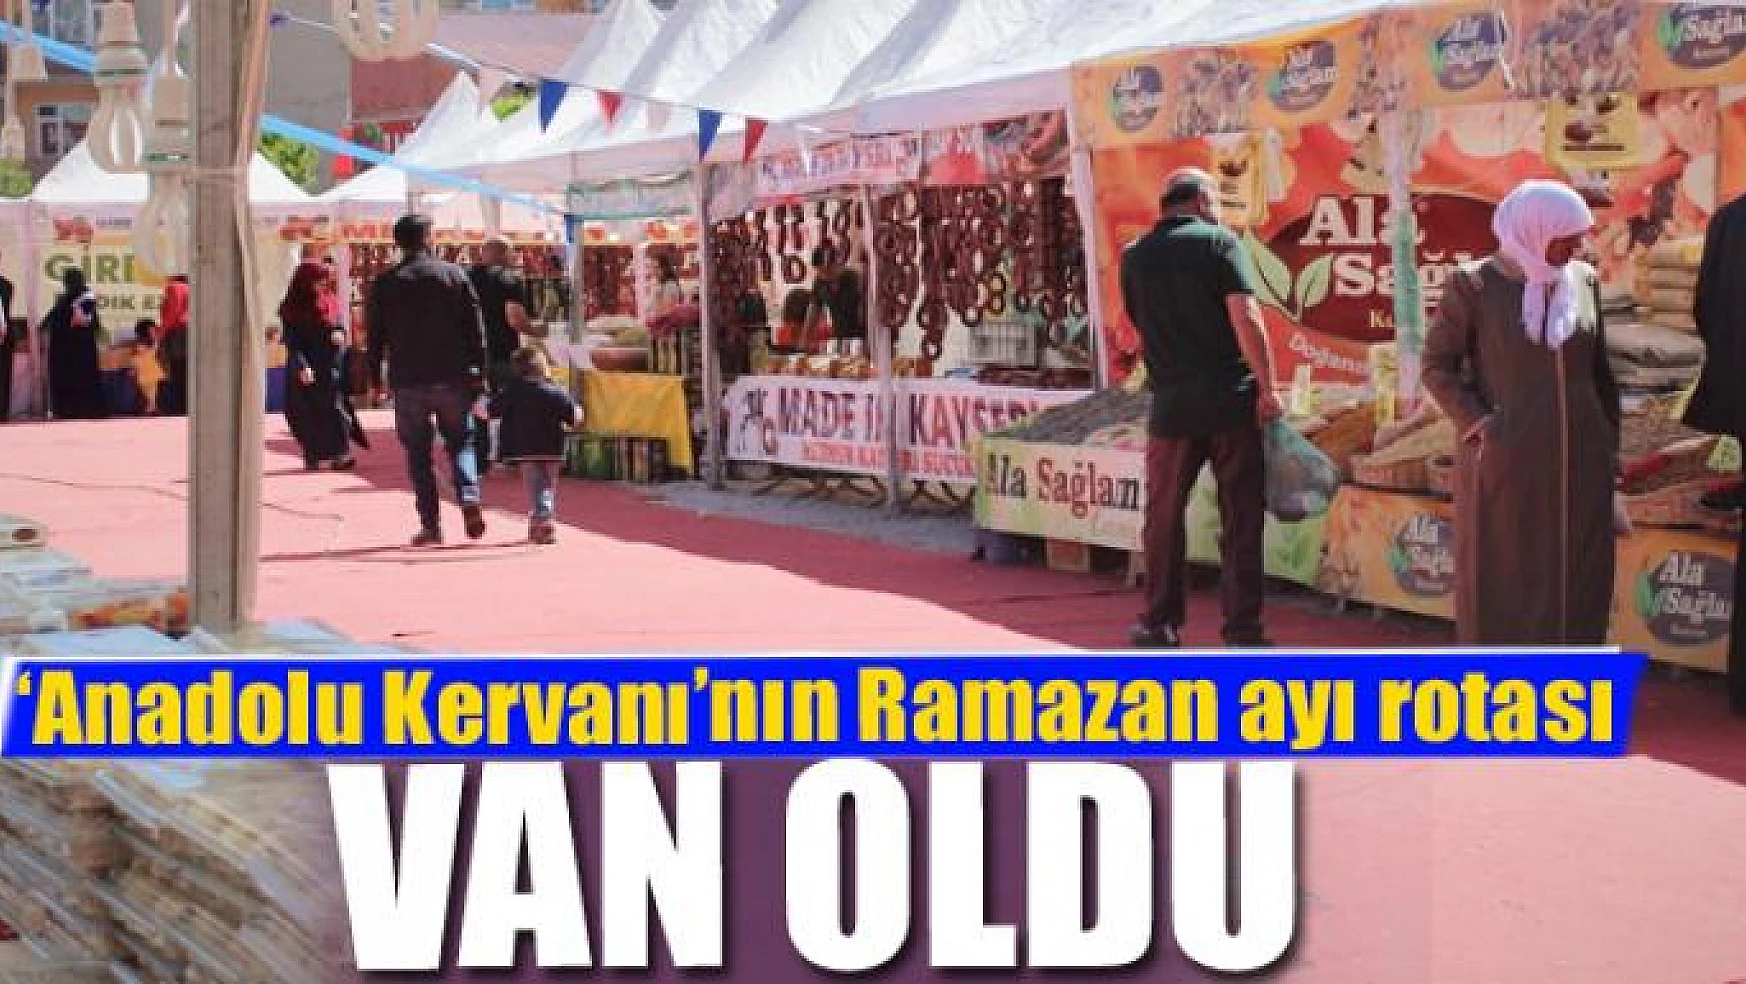 'Anadolu Kervanı'nın Ramazan ayı rotası Van oldu